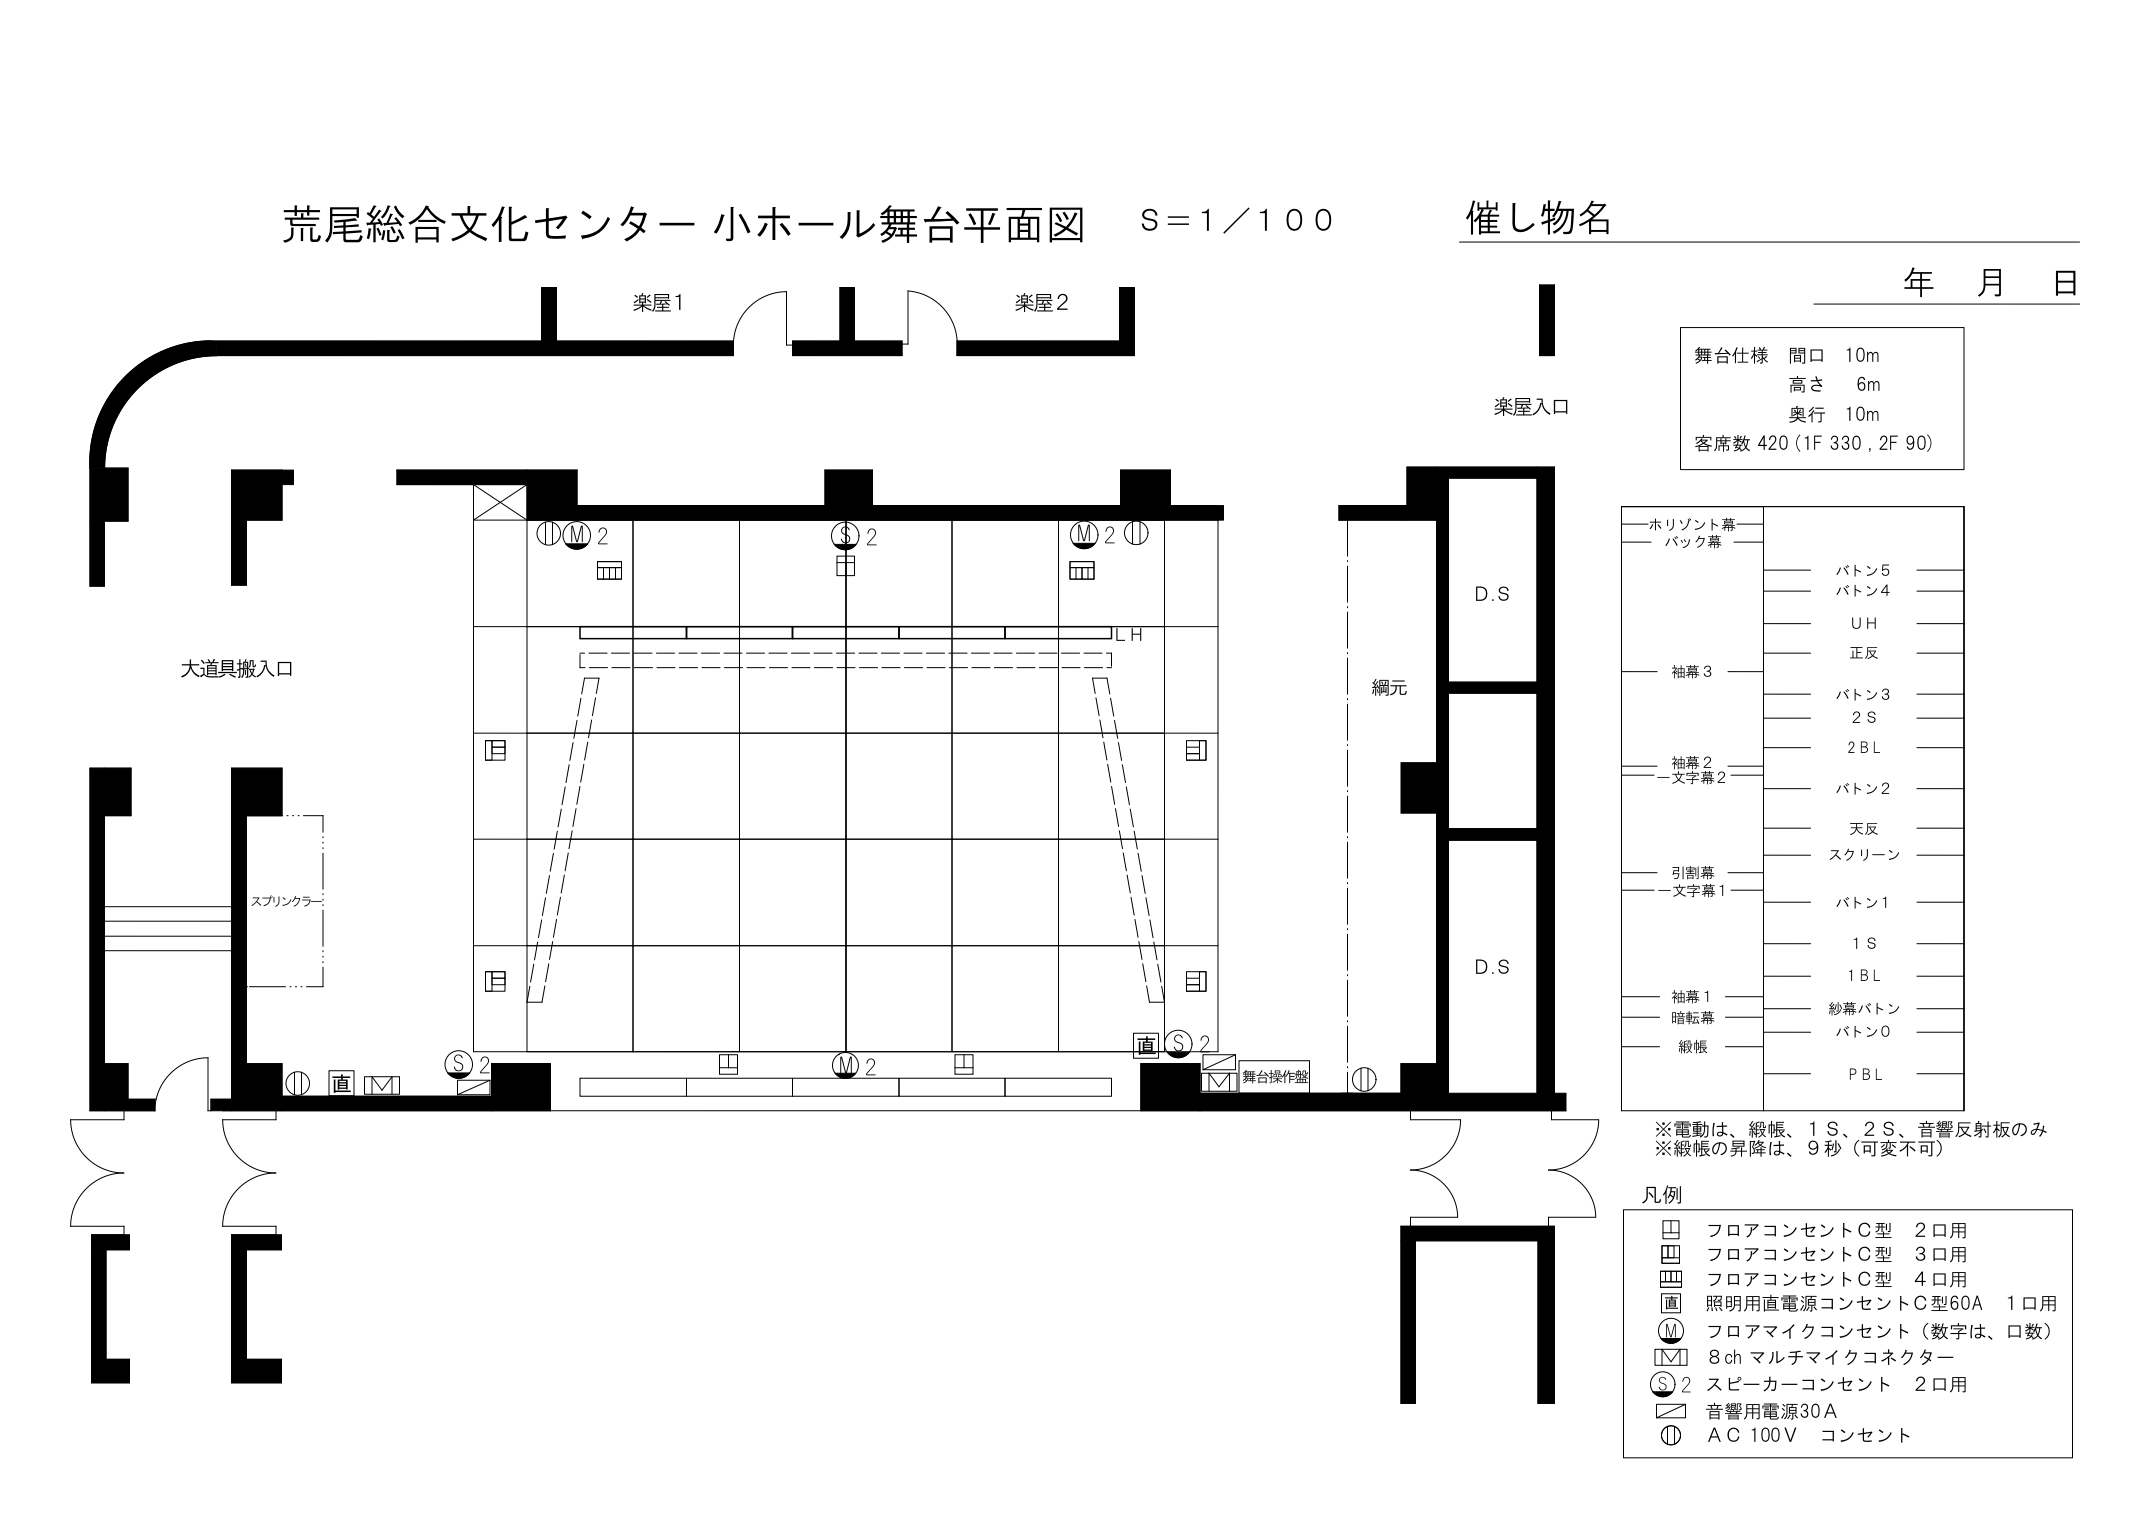 小ホール舞台図_page-0001.jpg